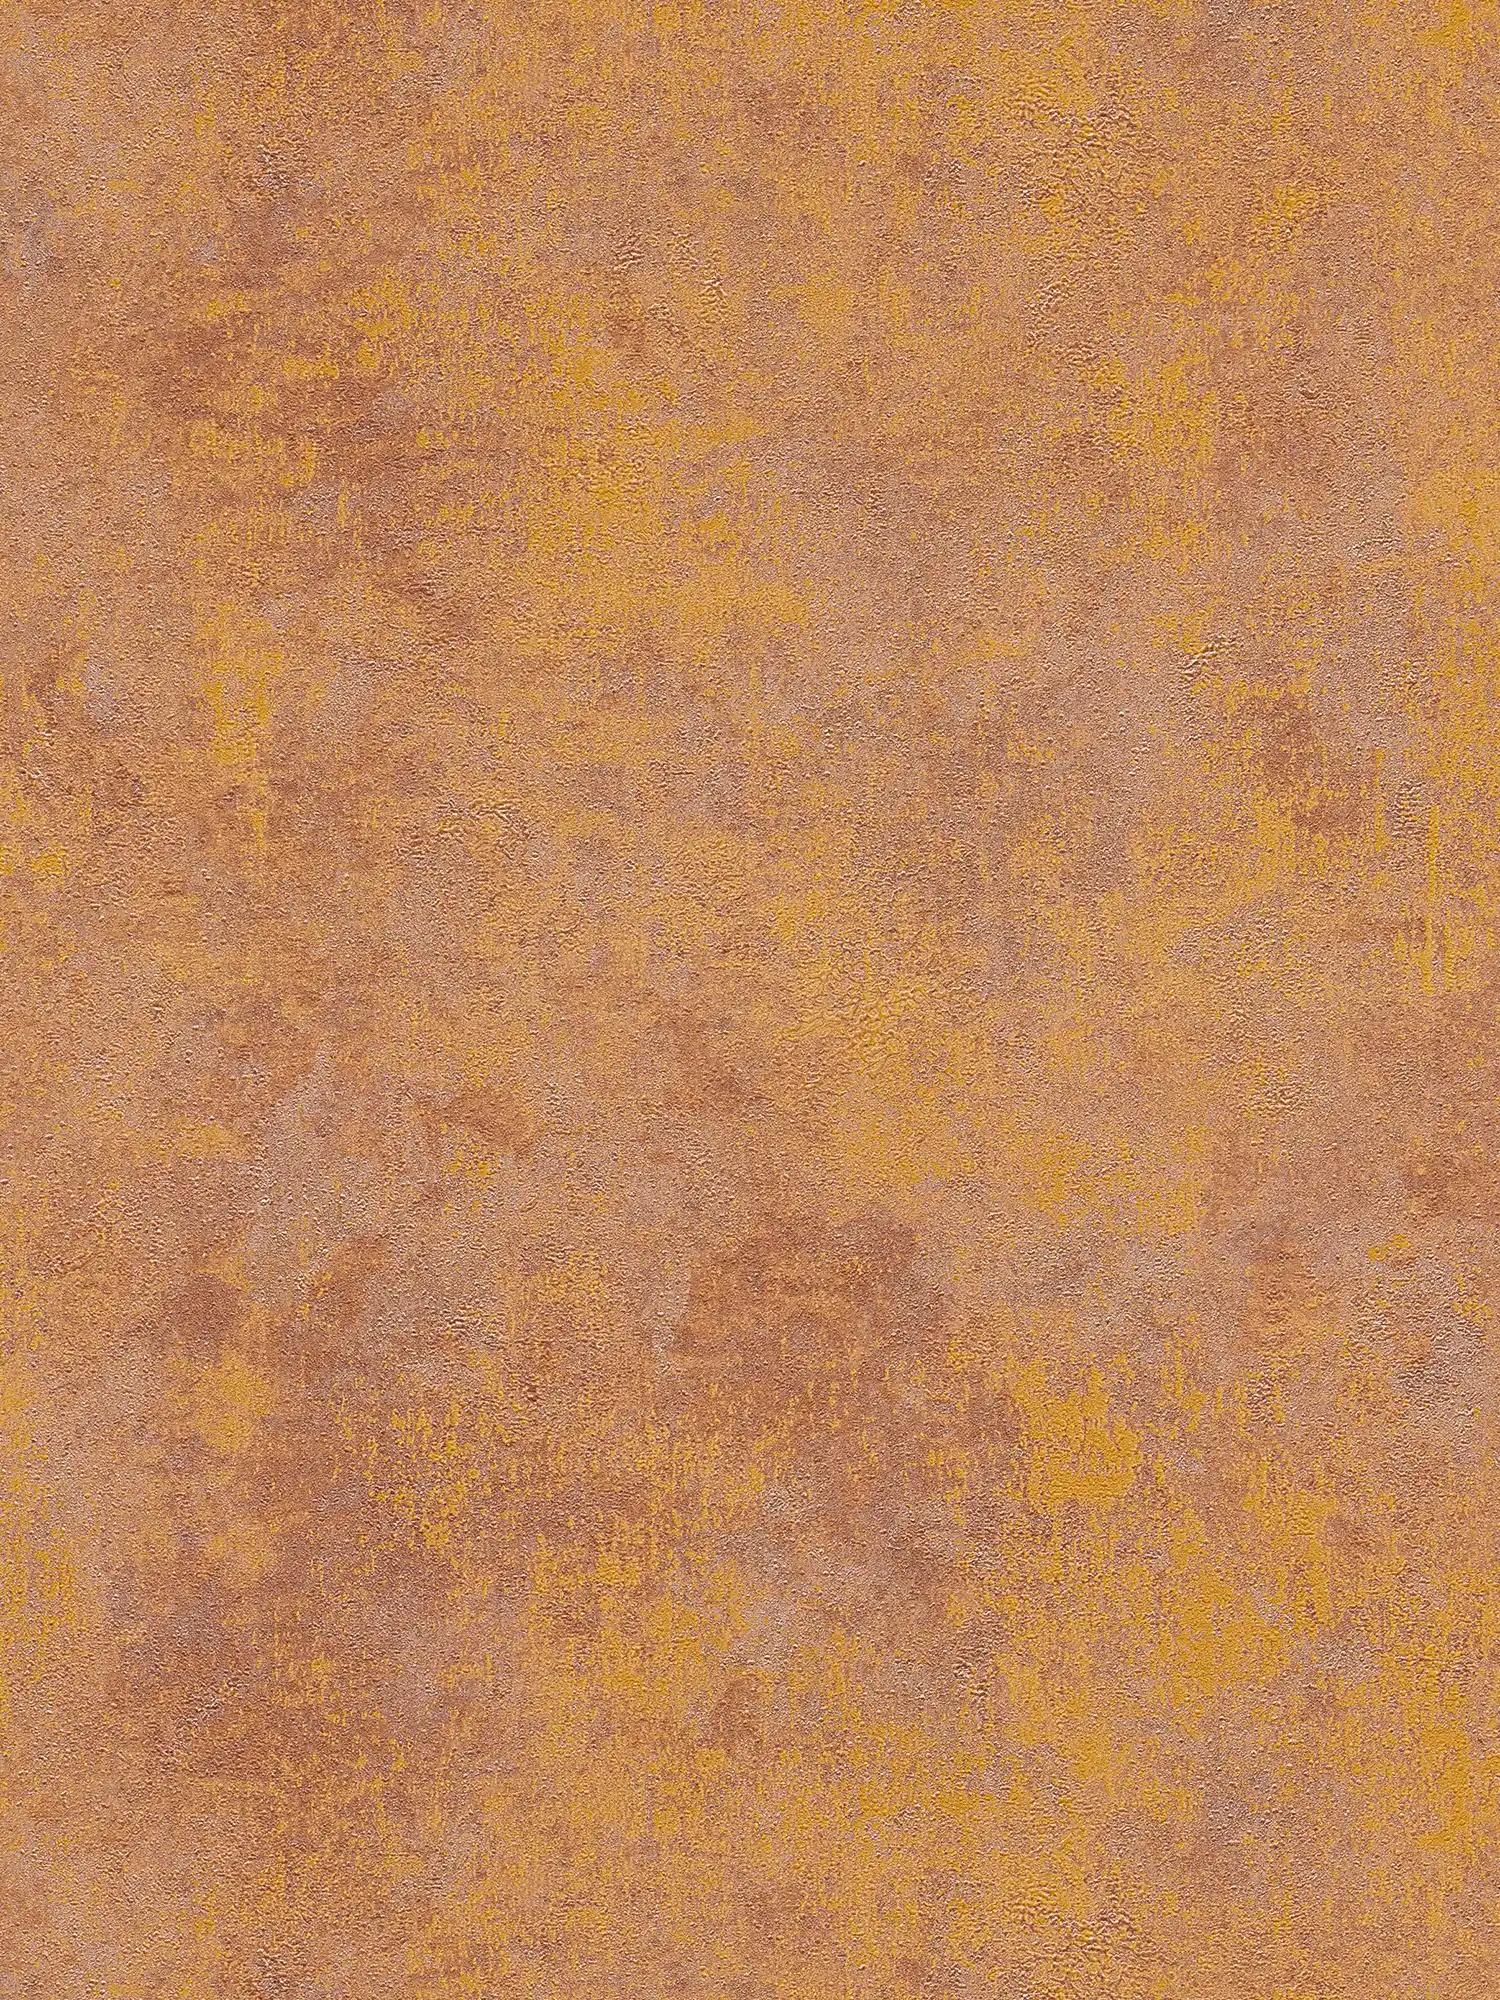 Papier peint intissé aspect rouille avec effet brillant - orange, cuivre, marron
